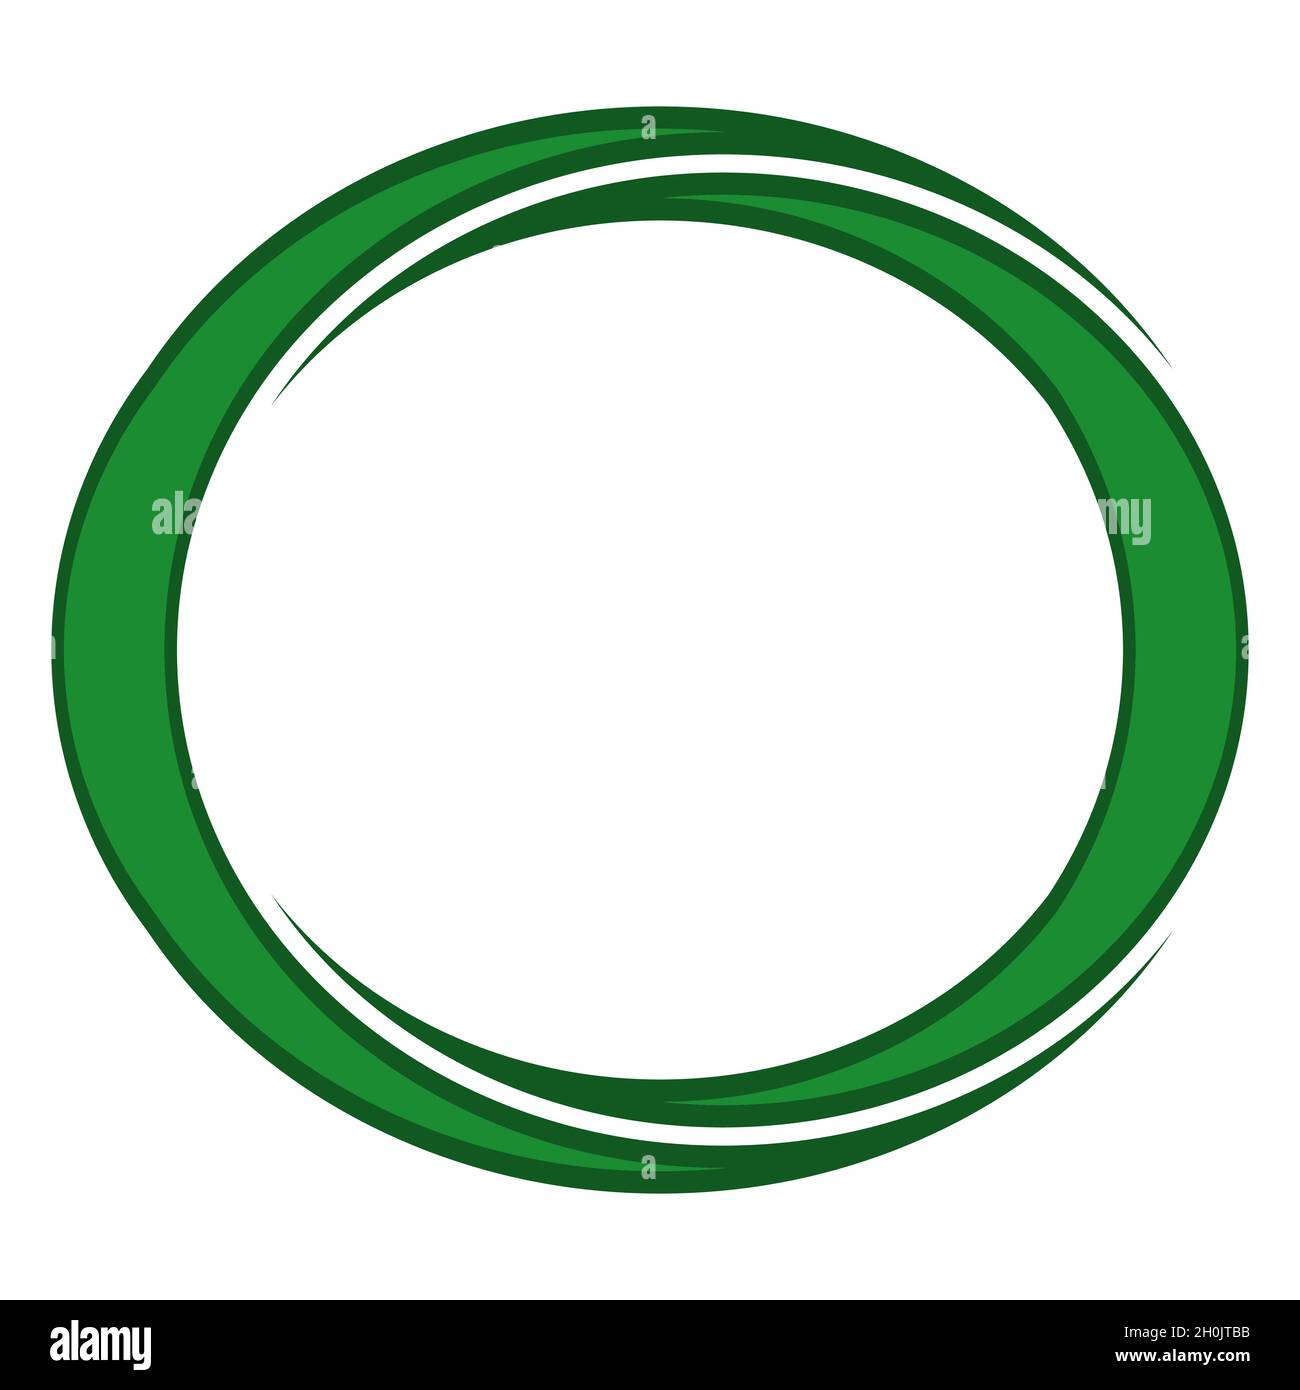 Zwei halbmondgrüne Monde in einem runden eleganten Rahmen im islamischen Stil Stock Vektor